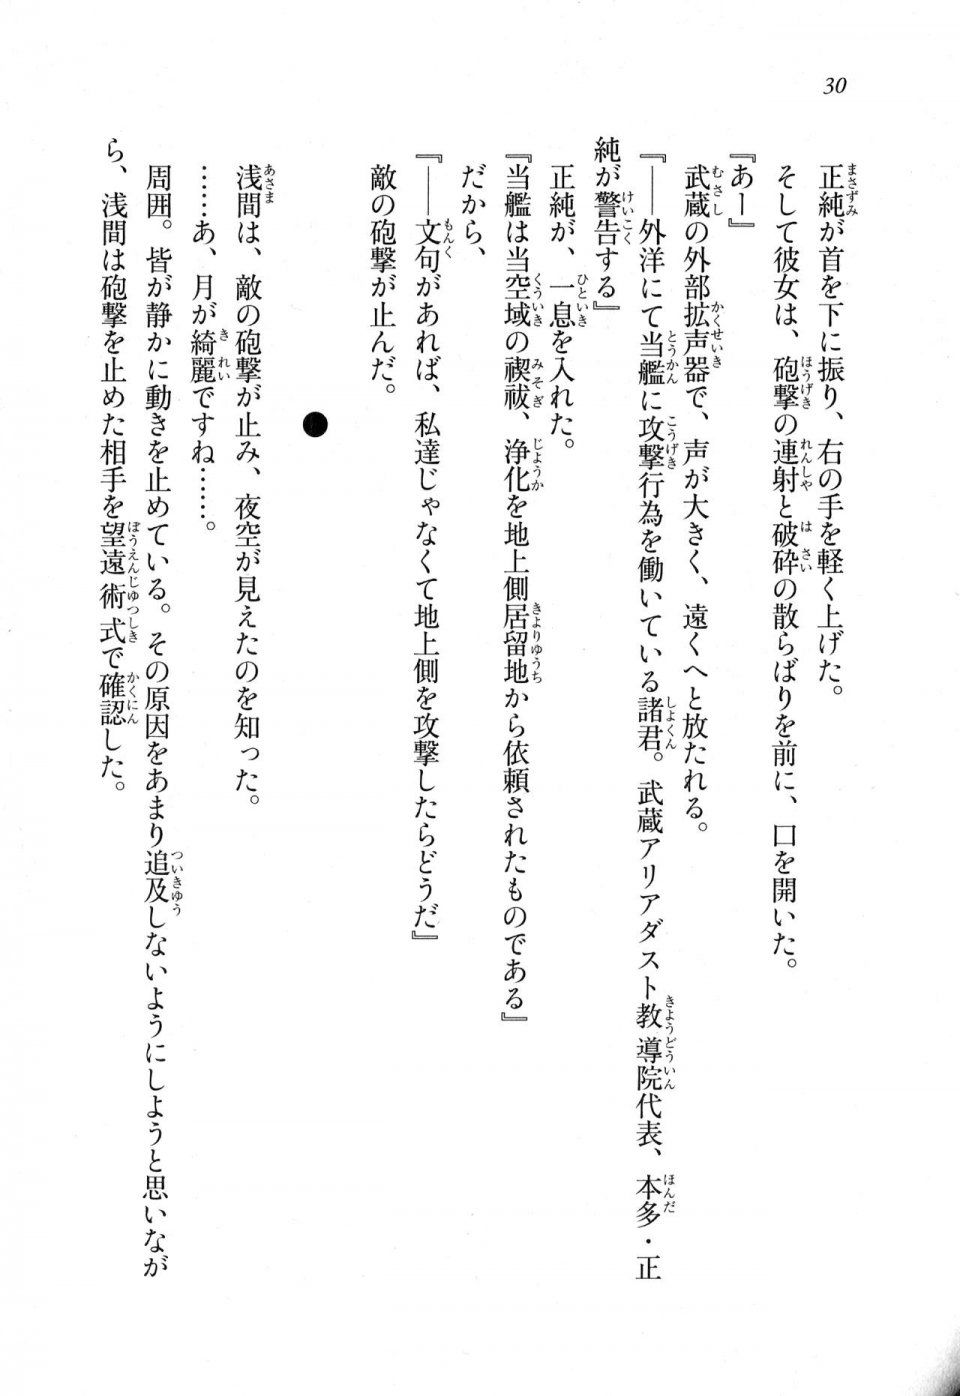 Kyoukai Senjou no Horizon LN Sidestory Vol 1 - Photo #29